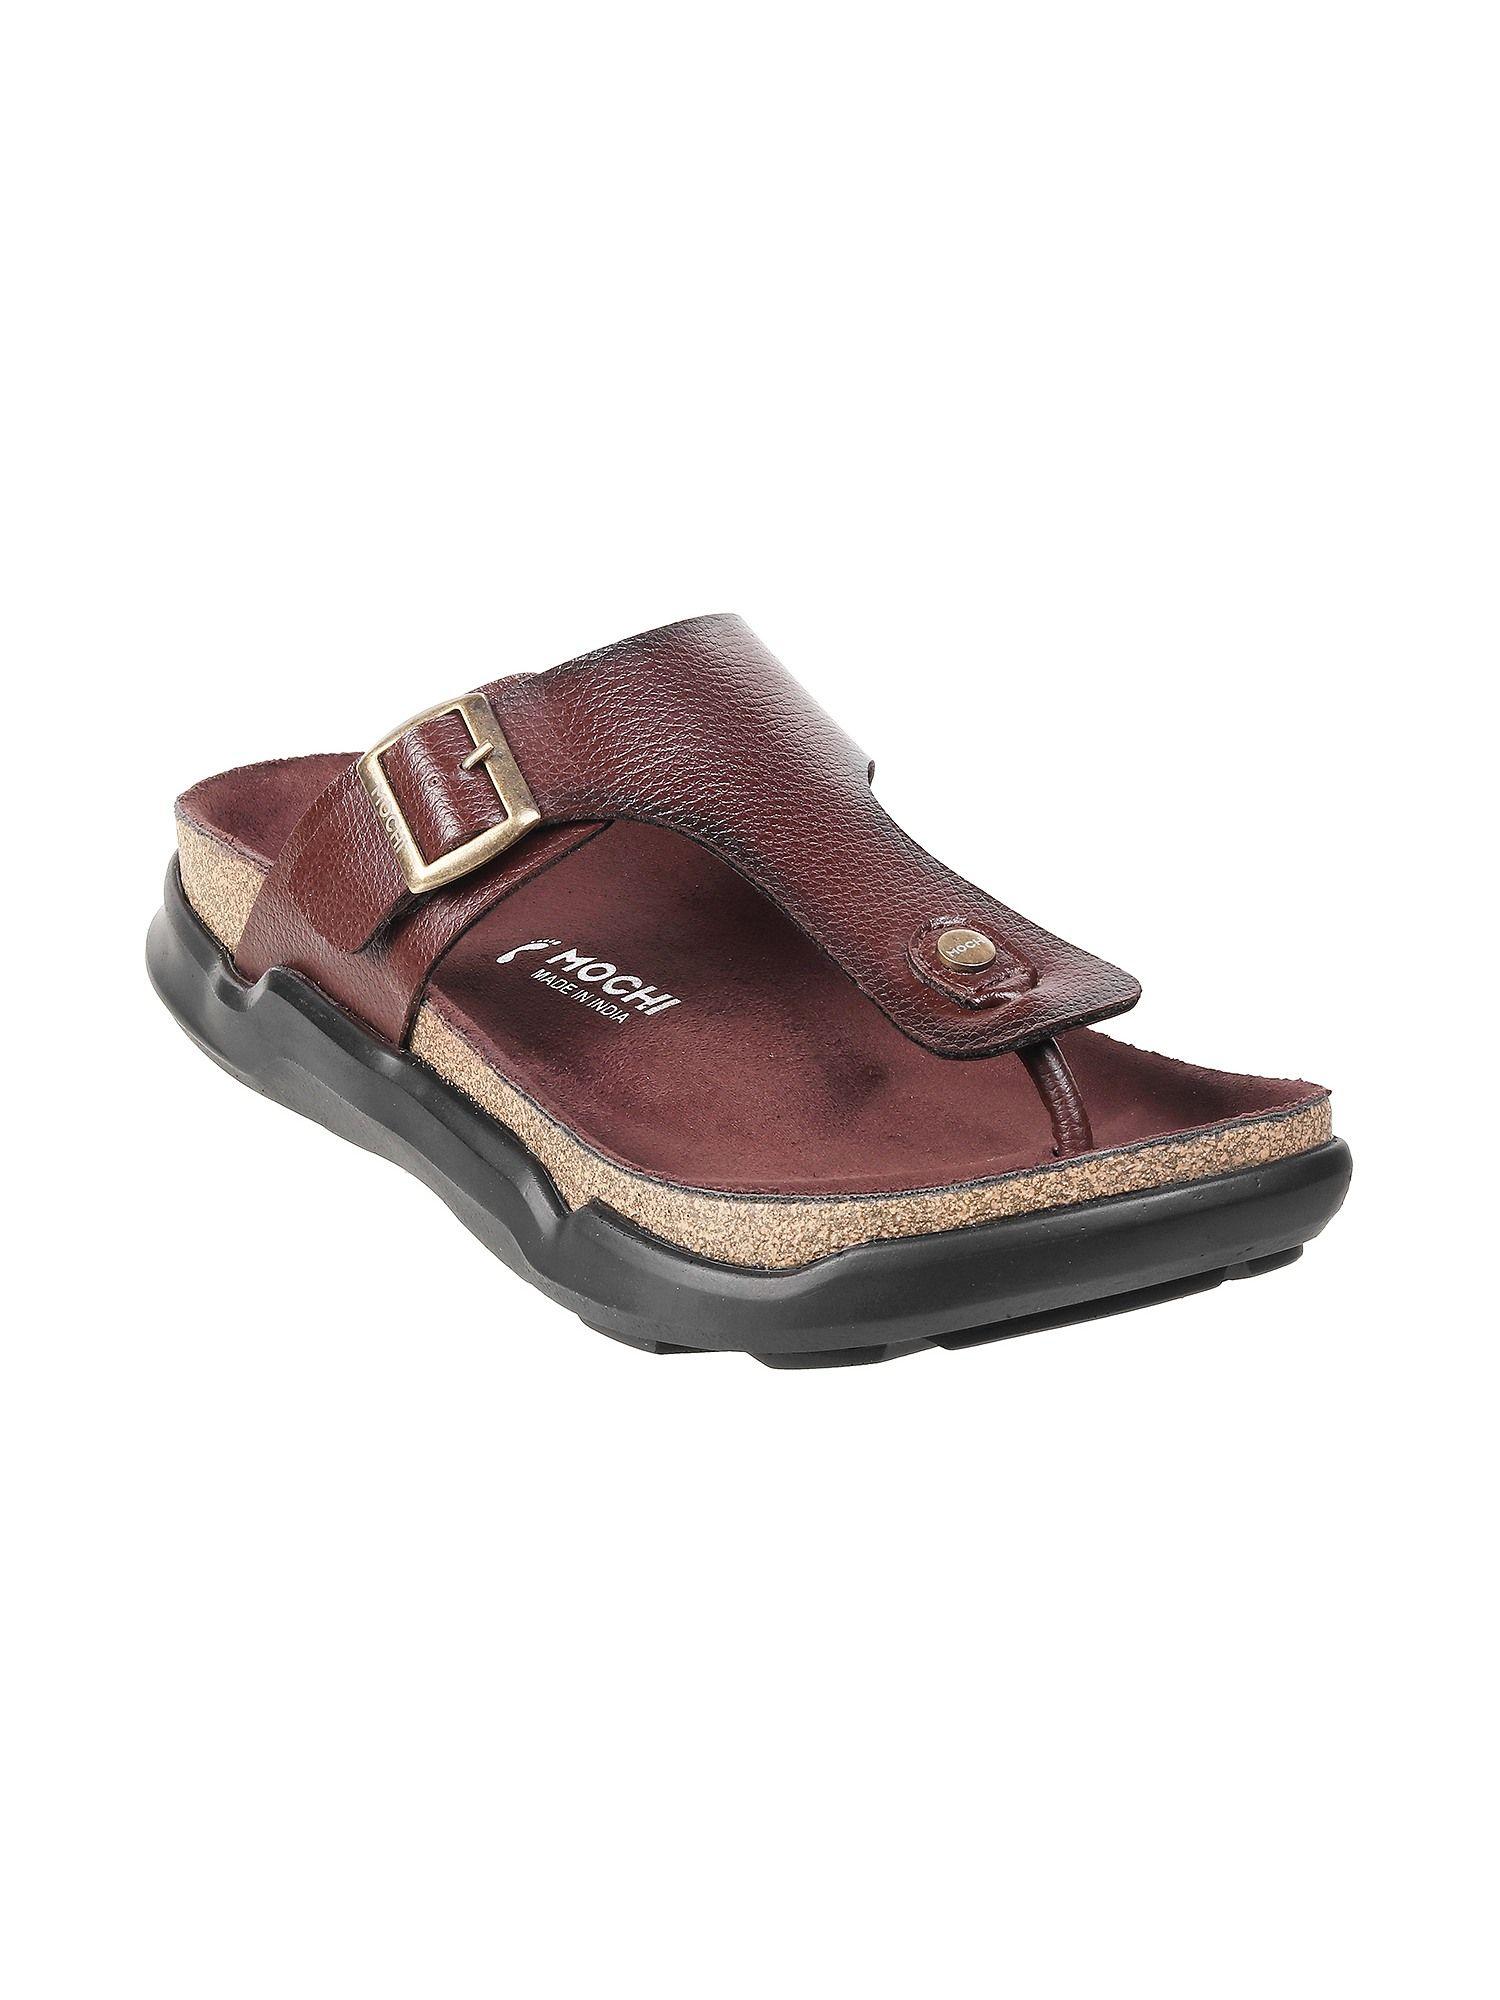 mens brown flat chappalsmochi textured brown sandals